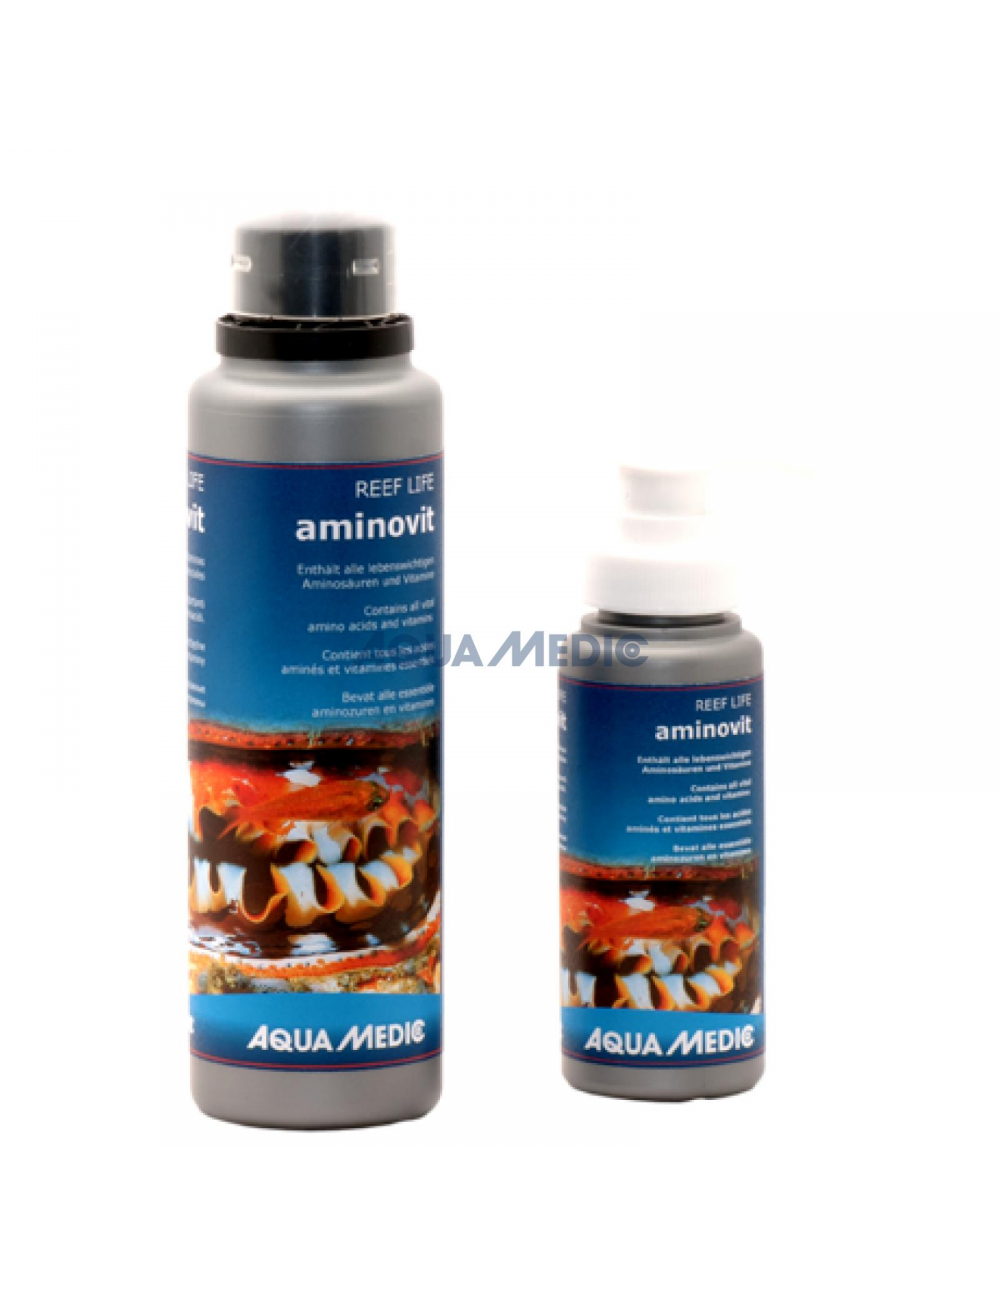 AQUA-MEDIC - REEF LIFE Aminovit - 250ml - Concentré d'acides aminés